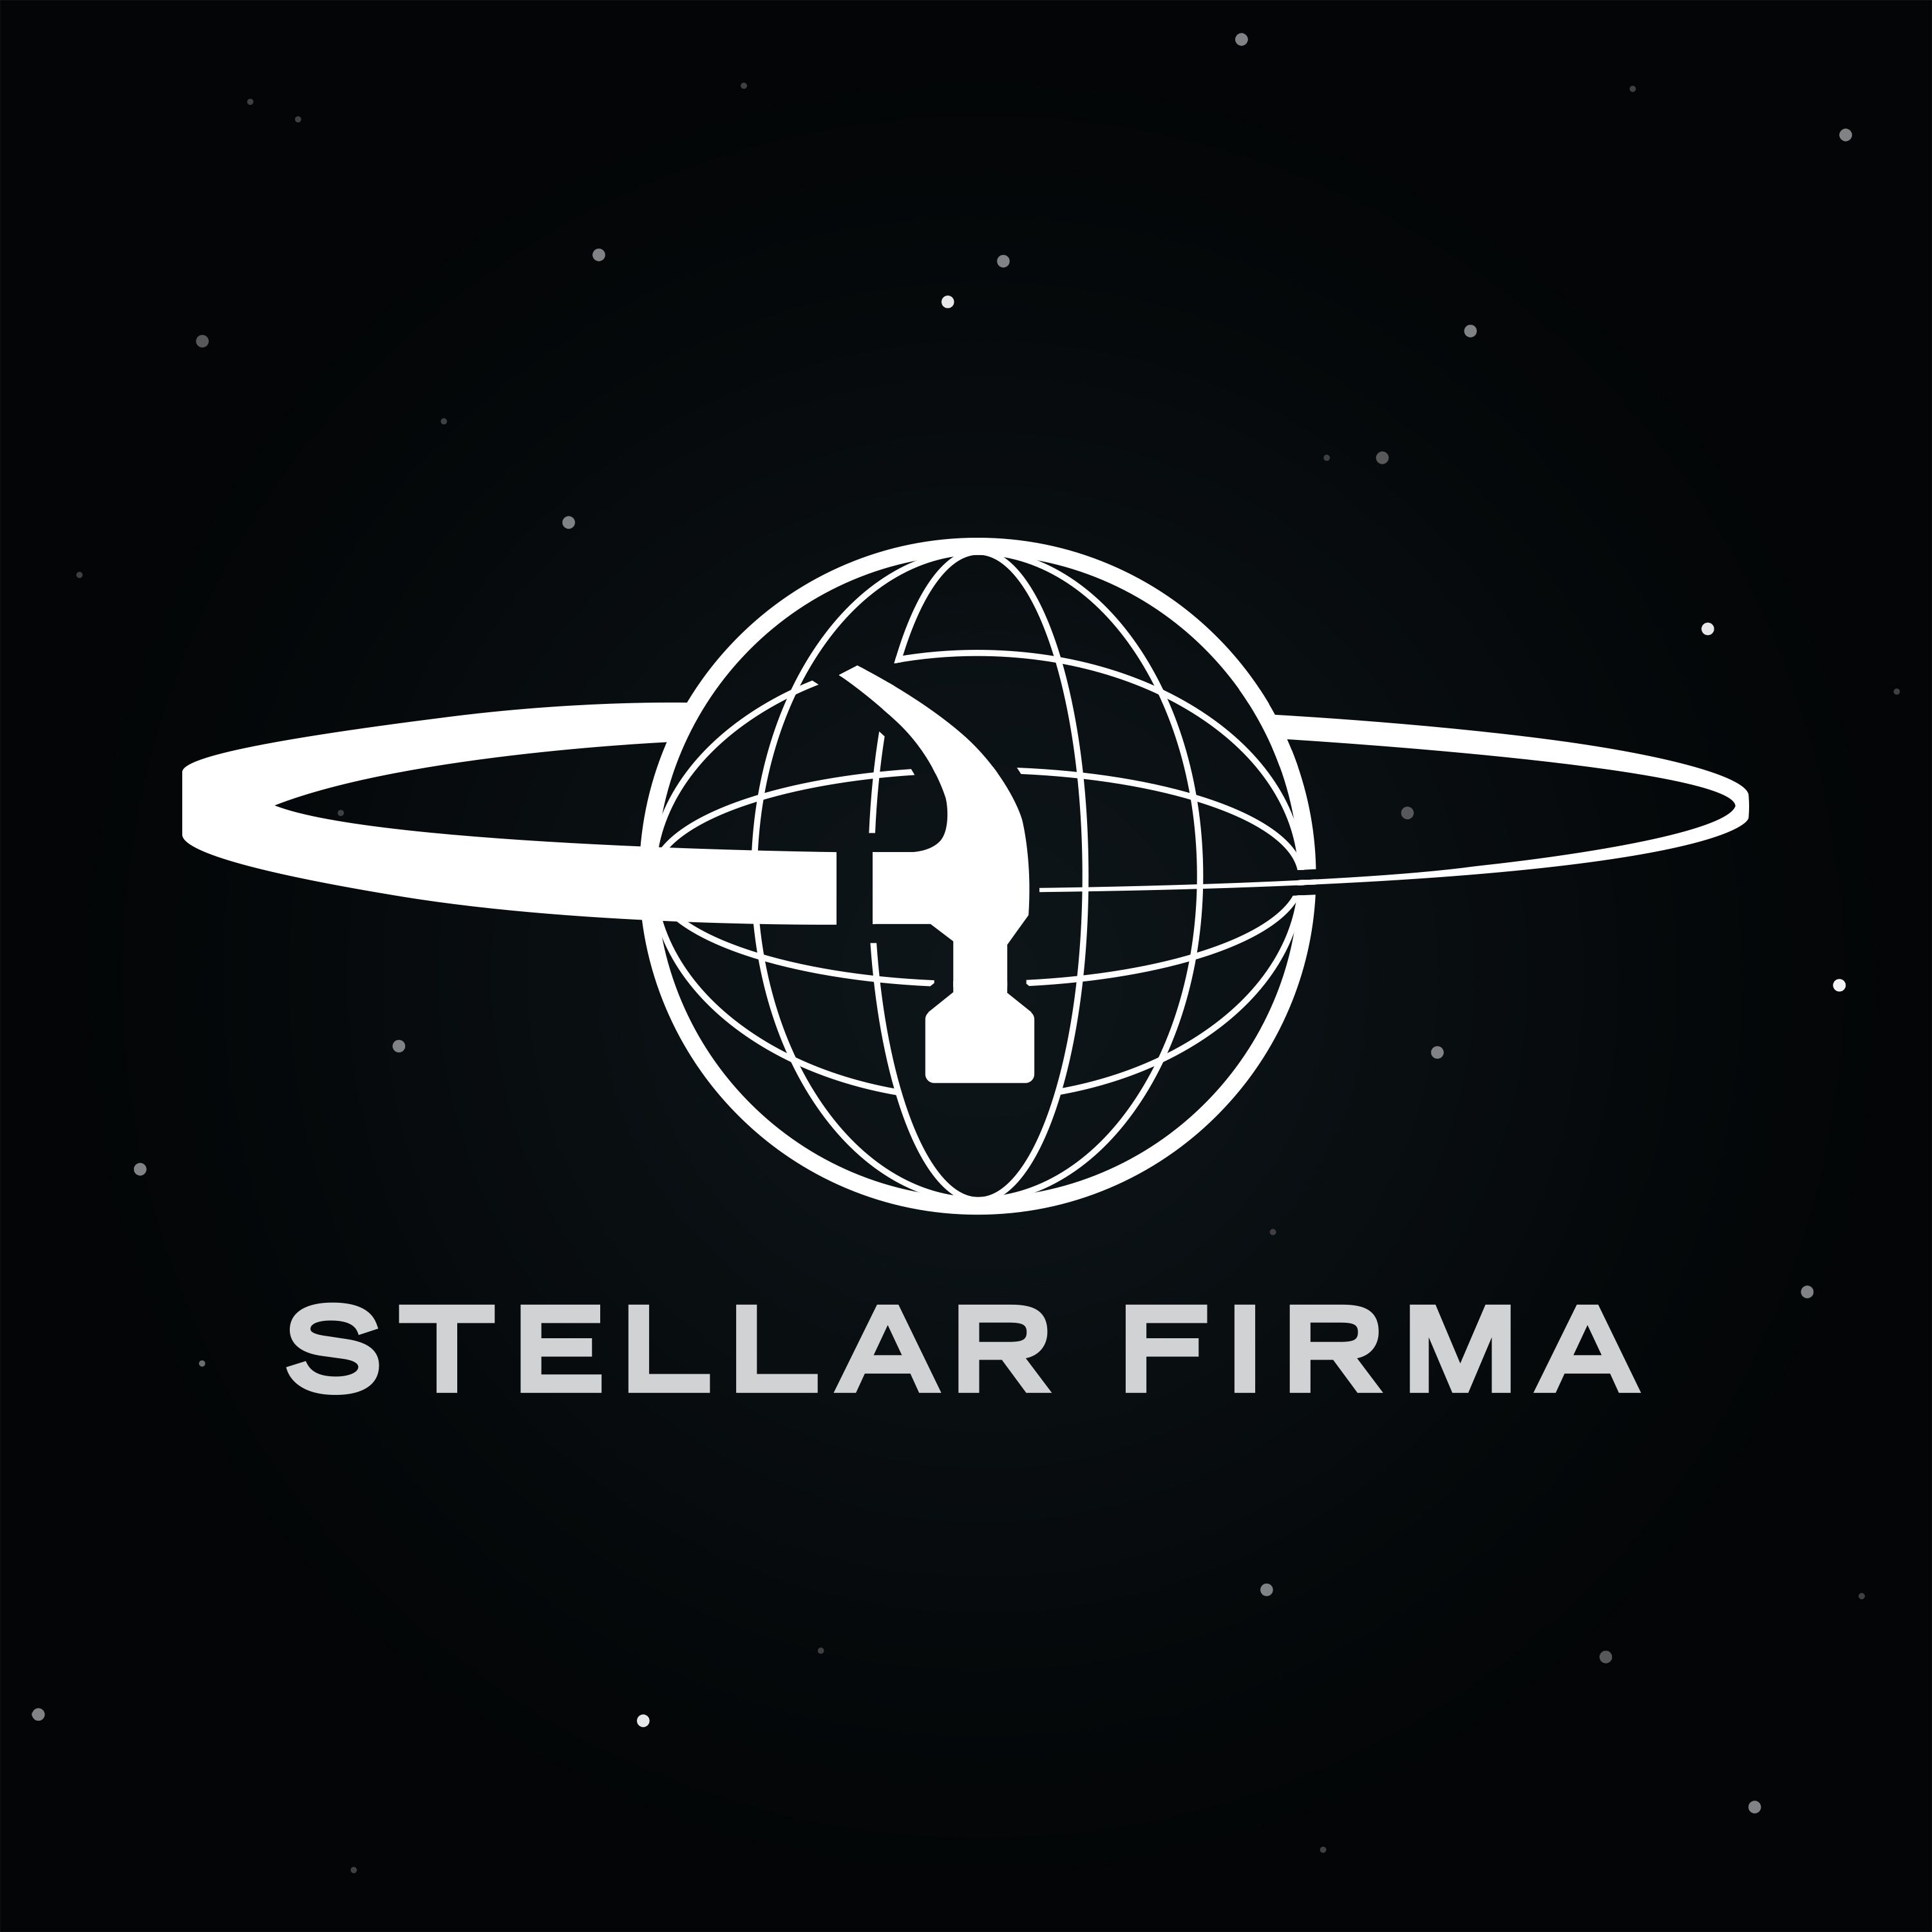 Stellar Firma - S1 Bloopers